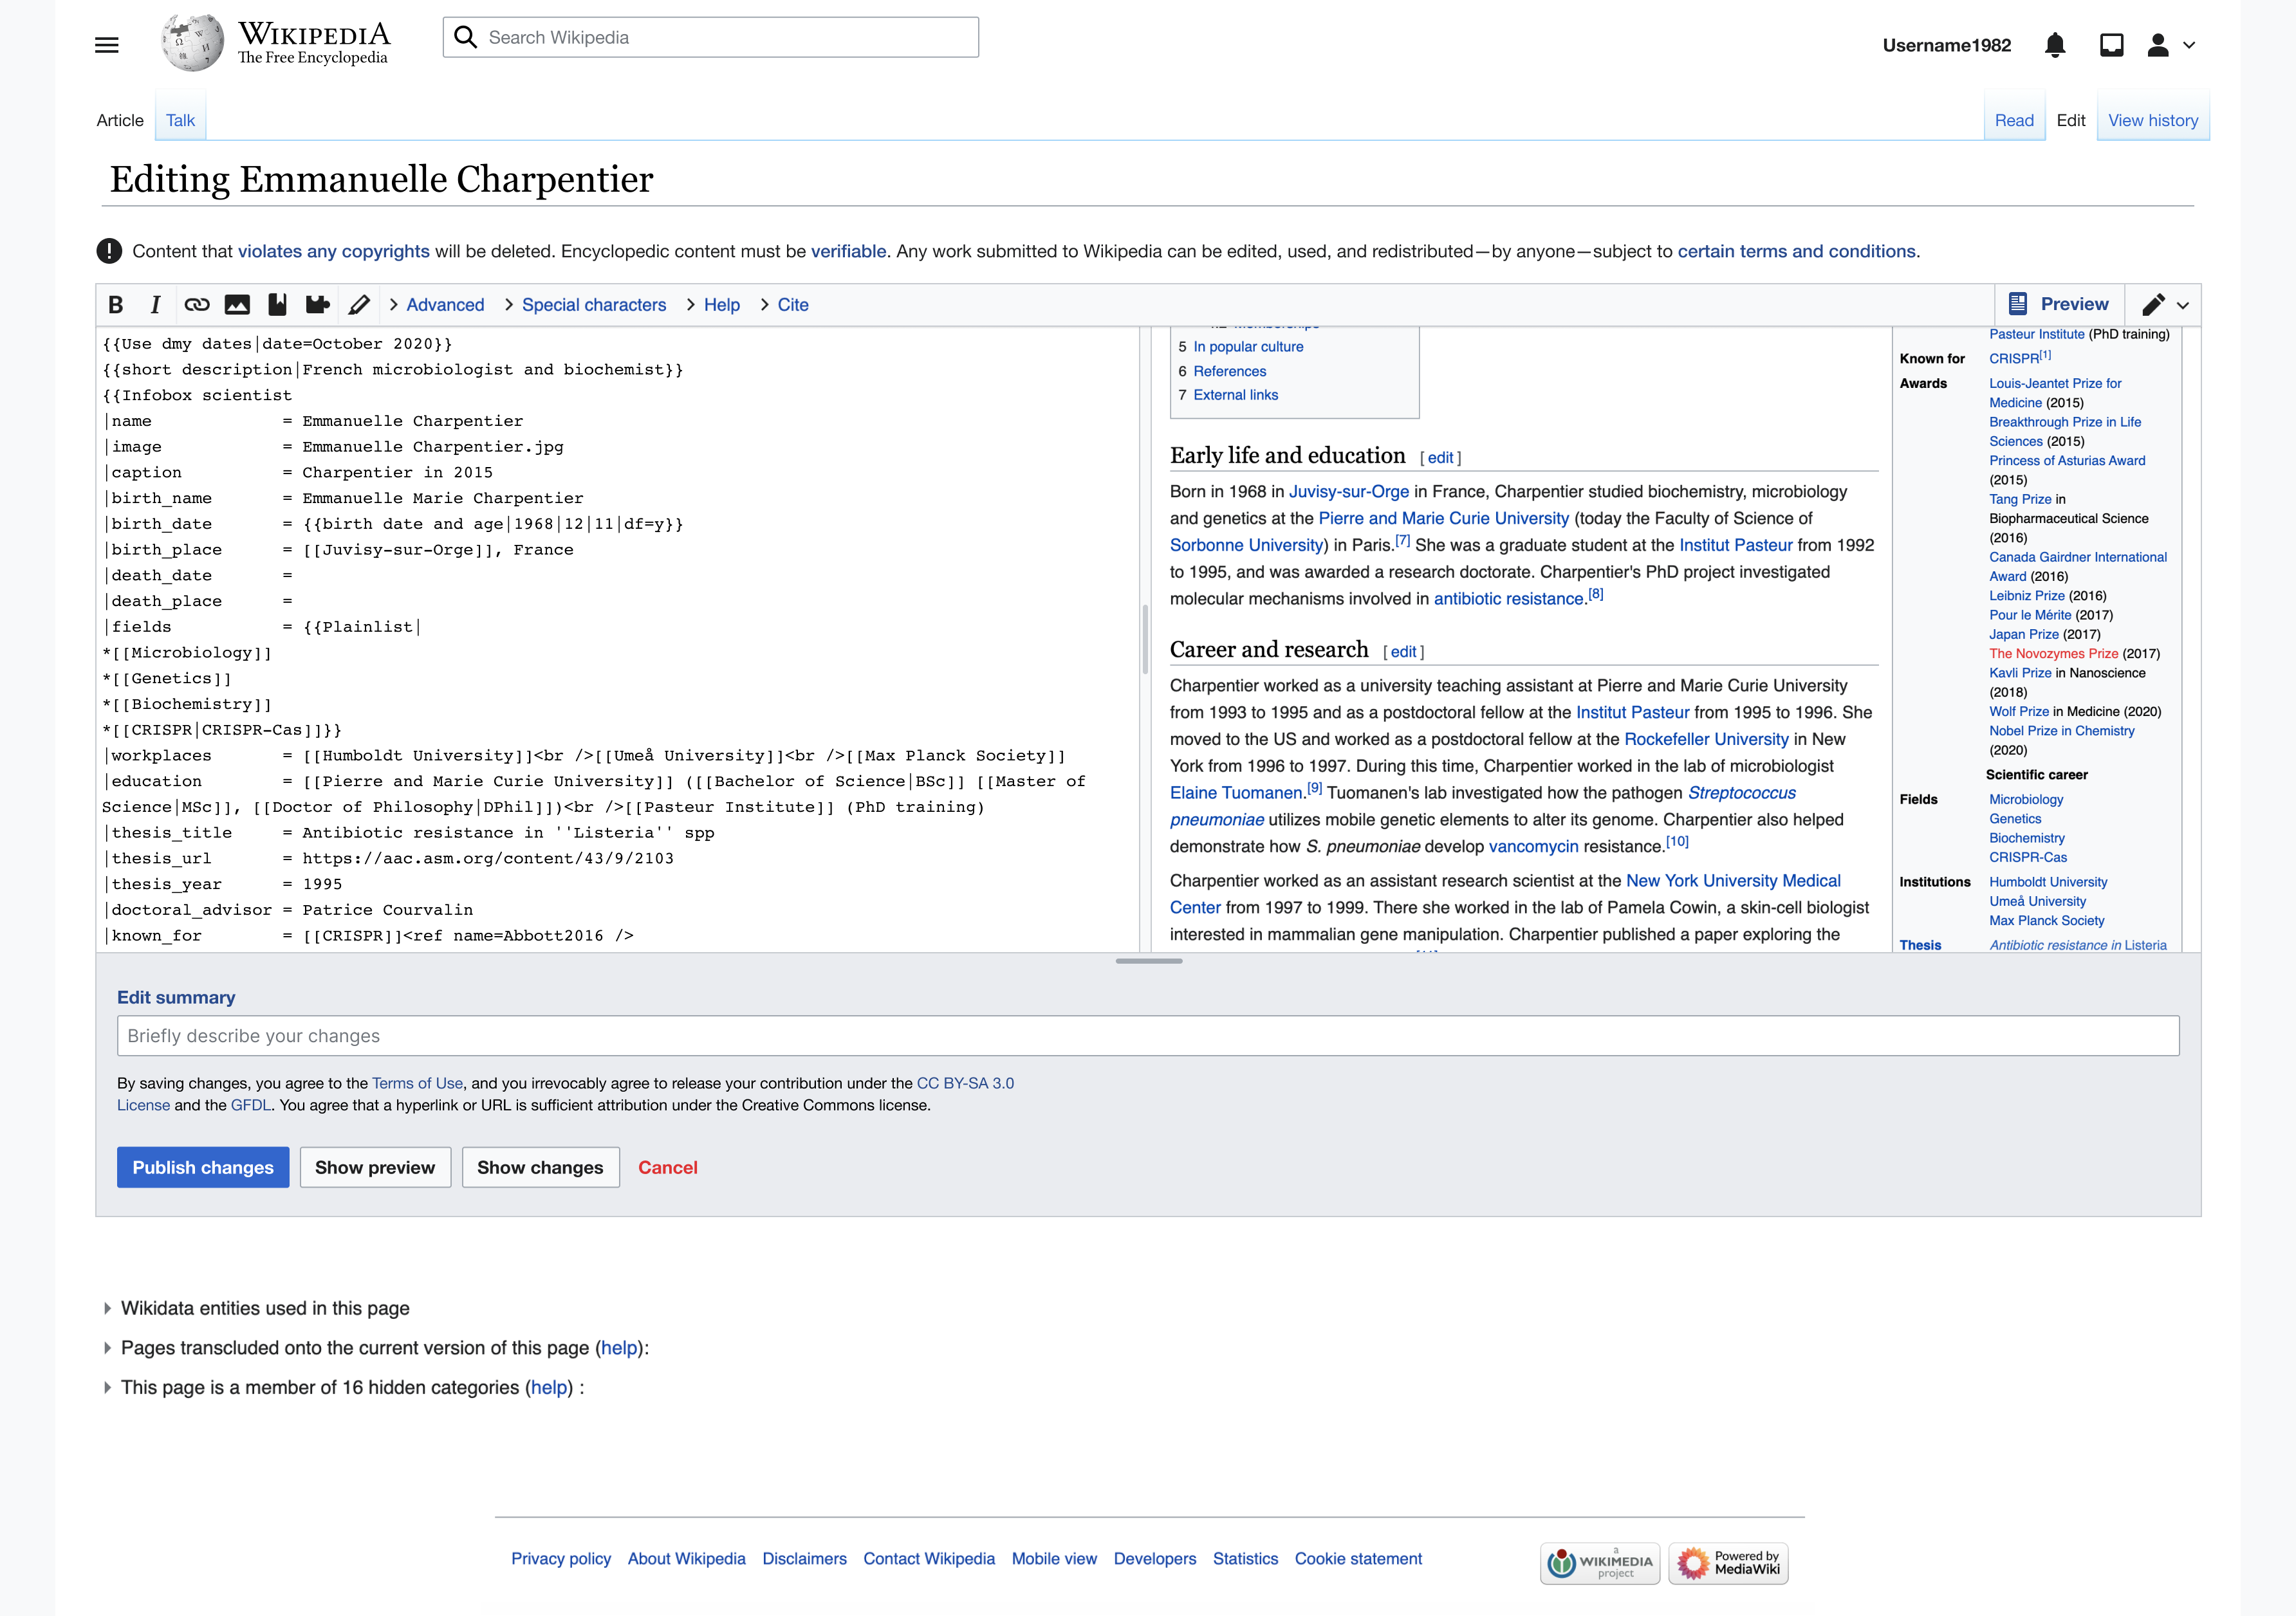 File:Wikipedia developers.png - Wikipedia